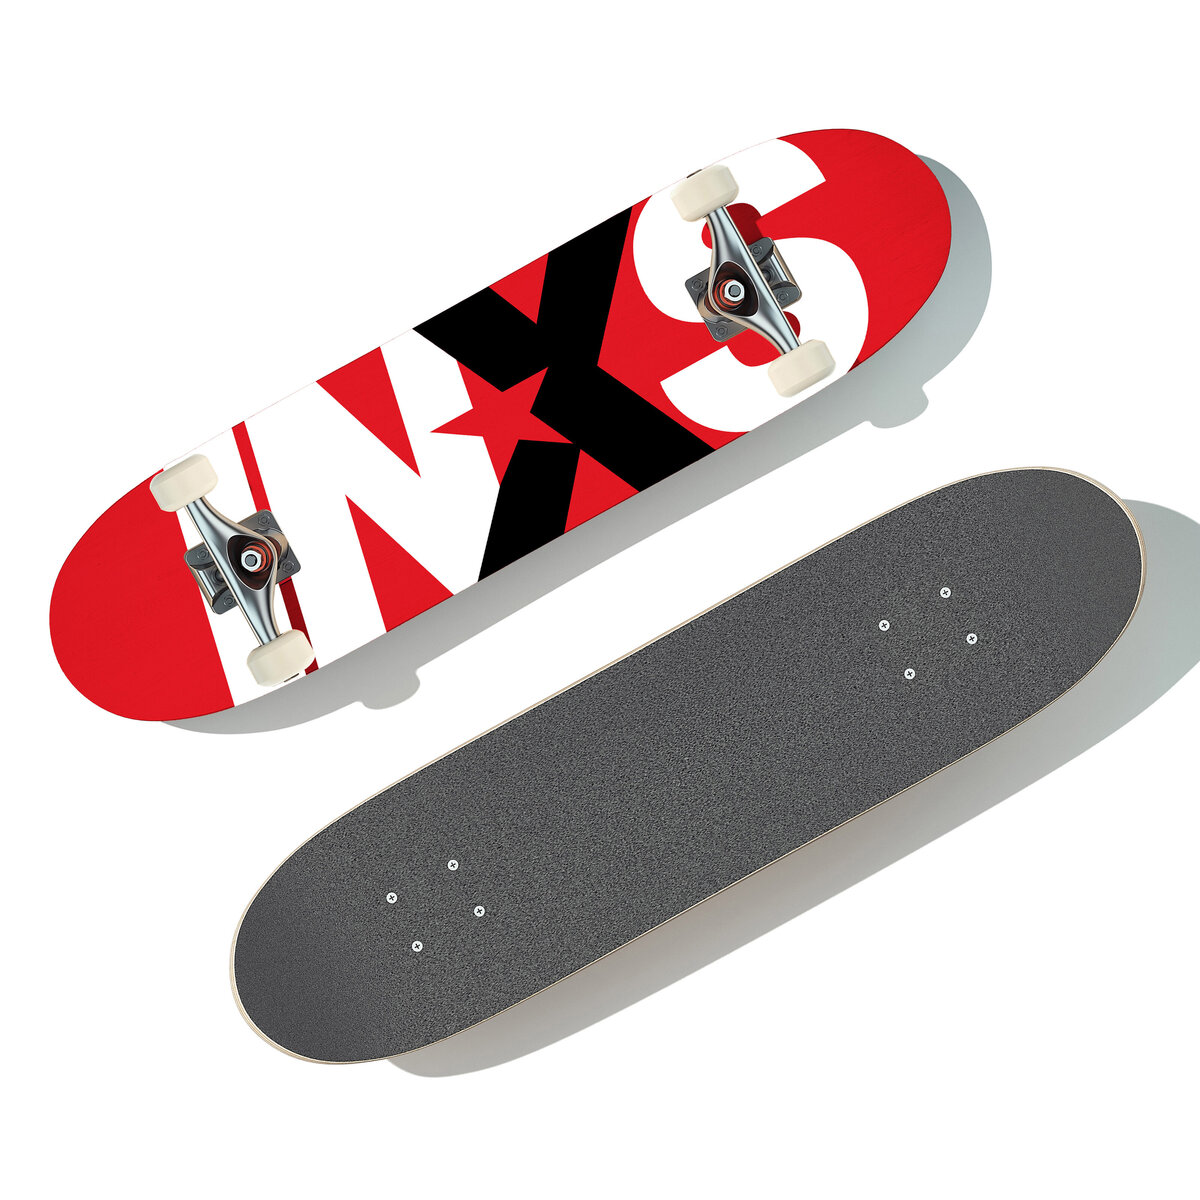 INXS (Skateboard)